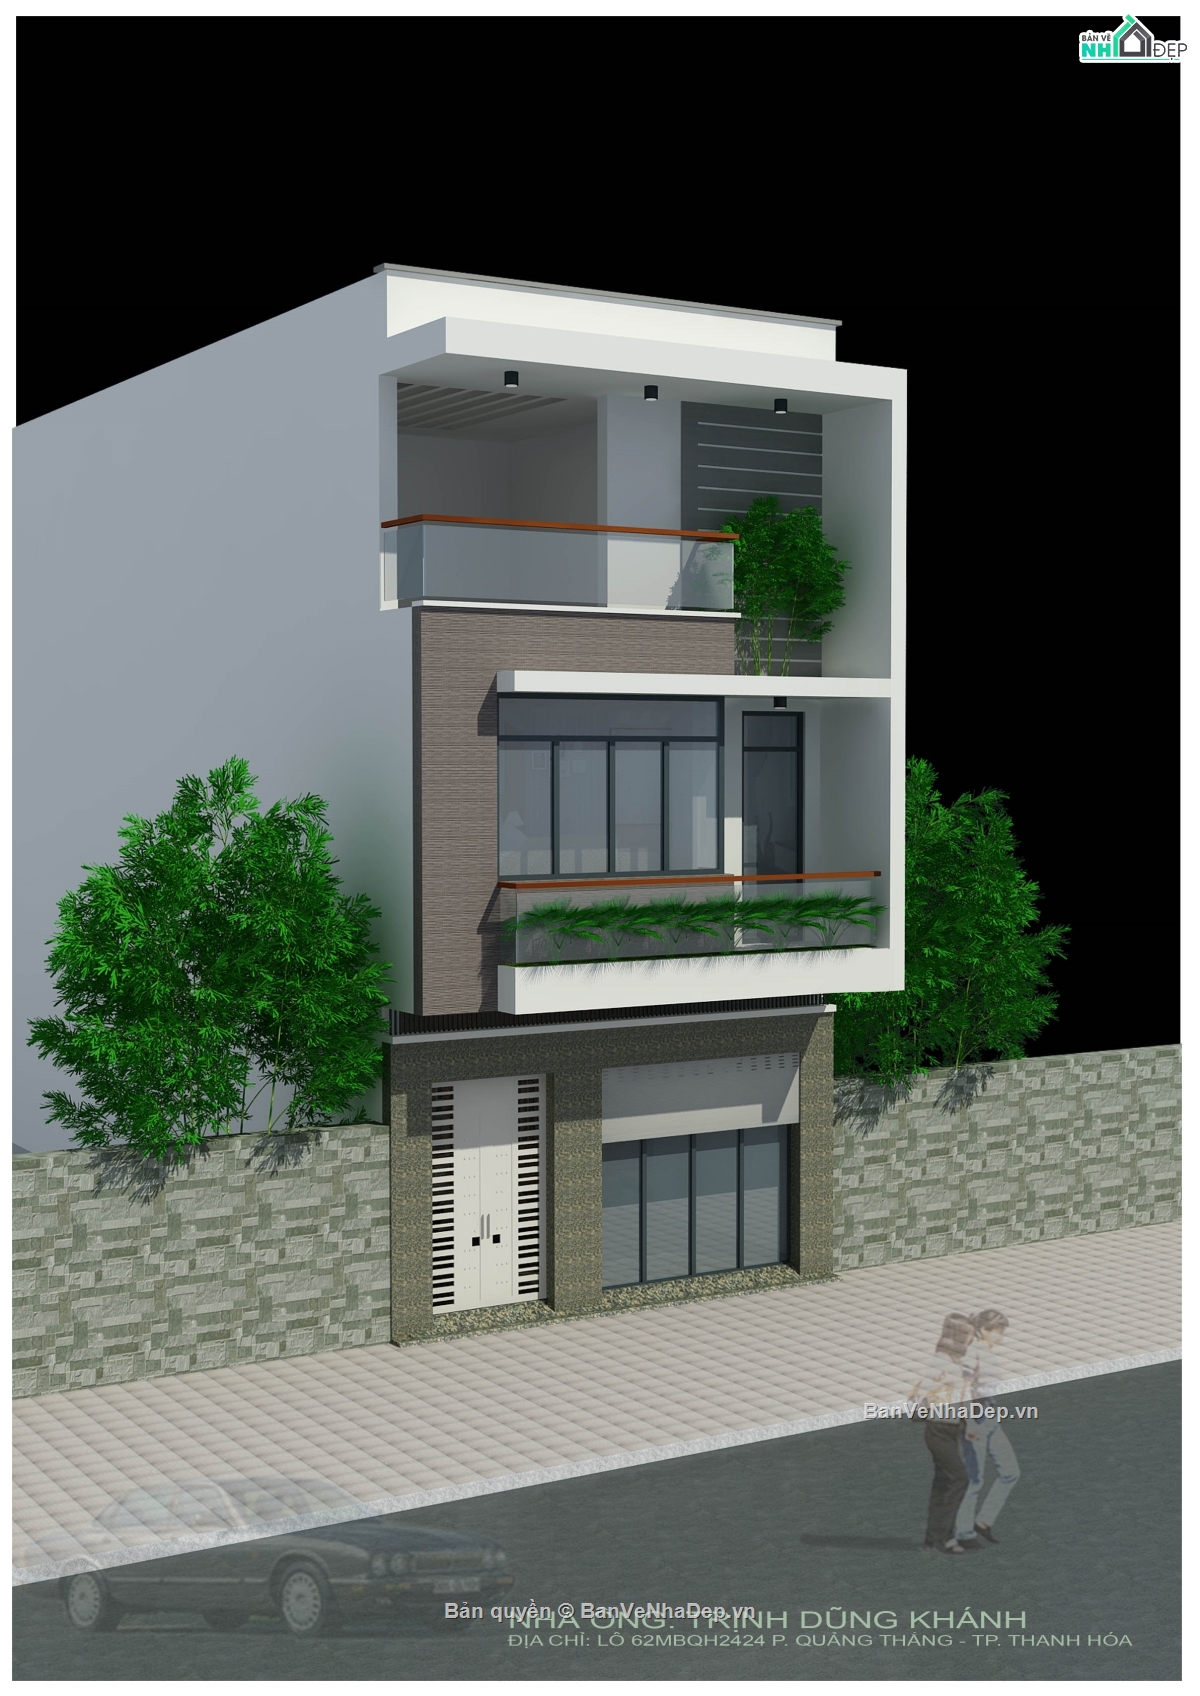 bản vẽ nhà phố 3 tầng,full kiến trúc nhà phố,nhà phố 3 tầng 6x14.5m,mẫu nhà phố 3 tầng,trọn bộ nhà phố 3 tầng